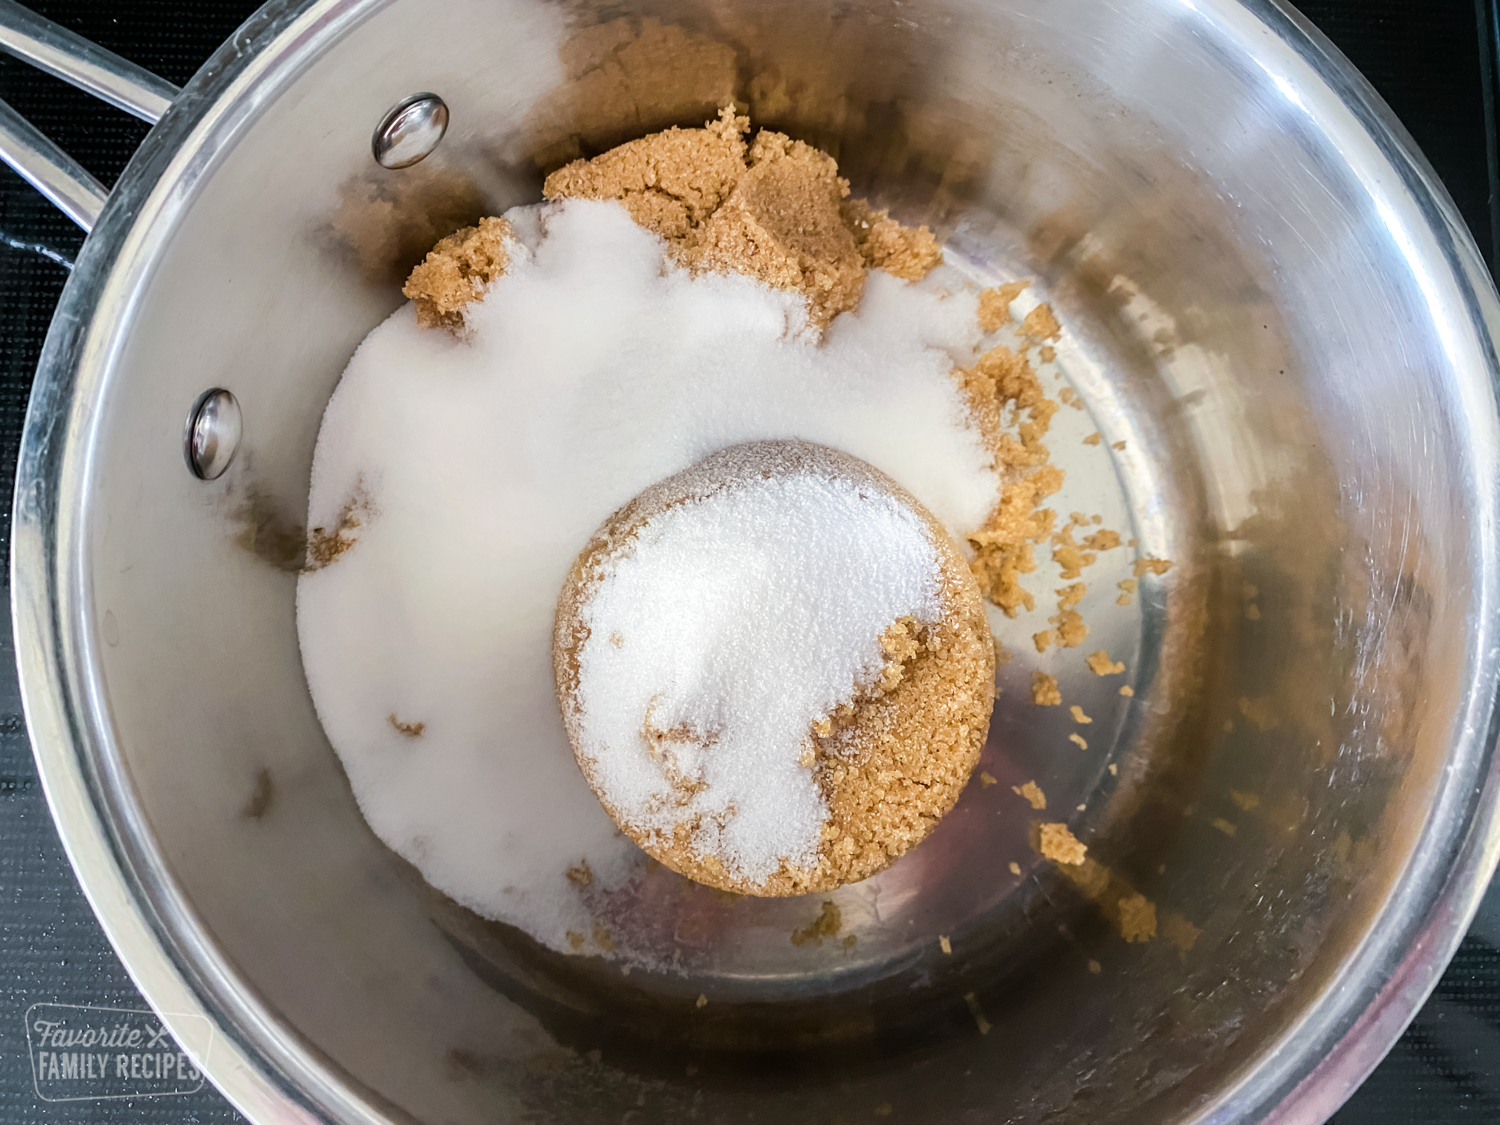 Brown sugar and sugar in a saucepan to make syrup